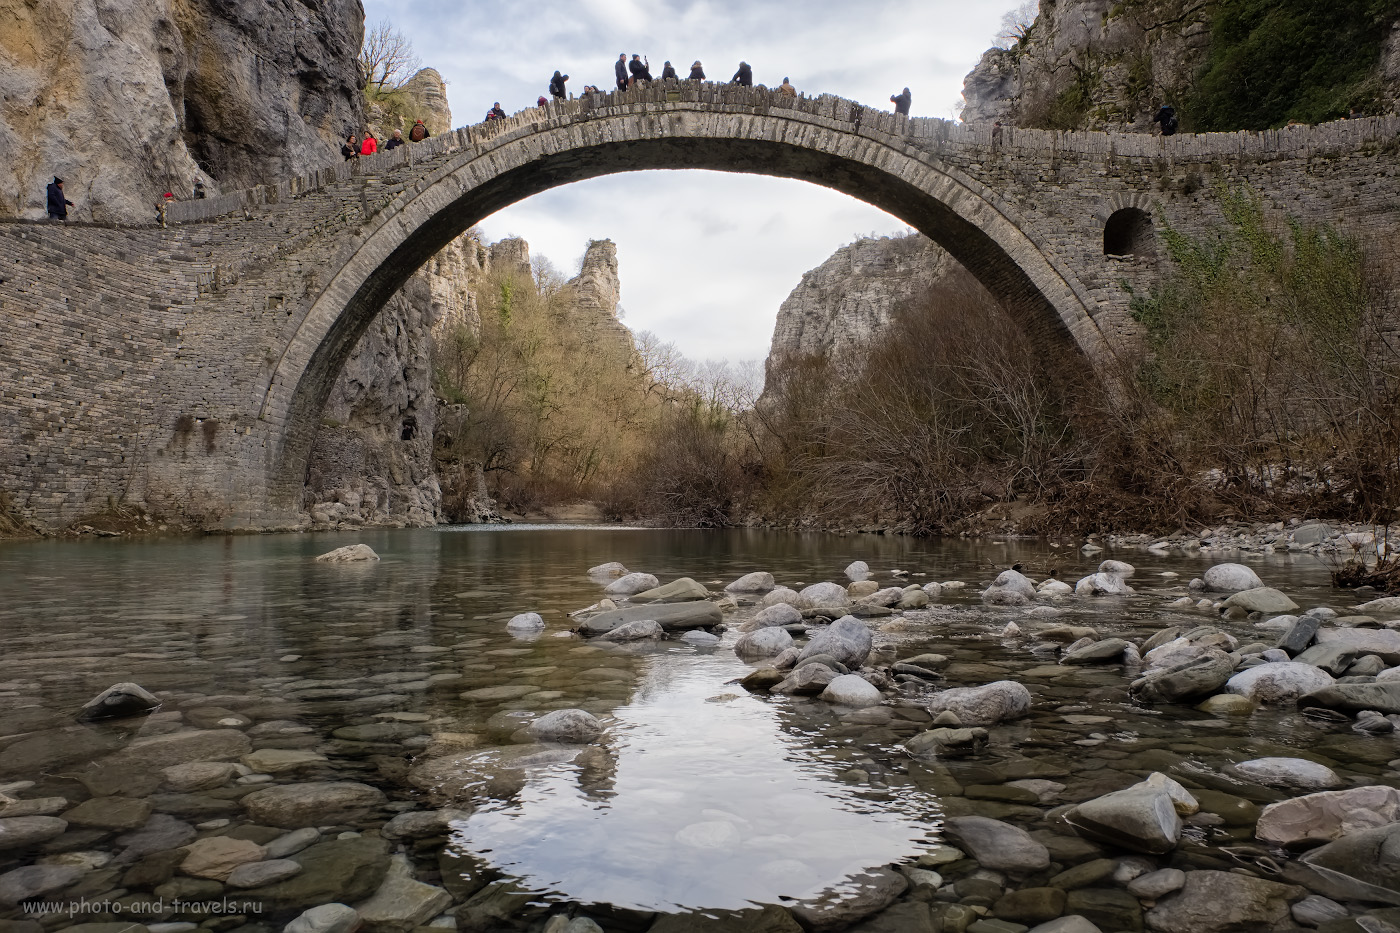 32. Так выглядит каменный мост Коккорос (Kokkoros) в Греции. Согласитесь, что похож на Кесме до реставрации? 1/60, 11.0, 200, -1.67, 16.